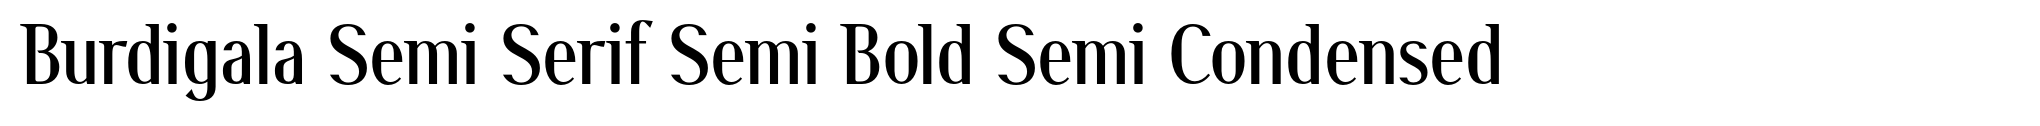 Burdigala Semi Serif Semi Bold Semi Condensed image